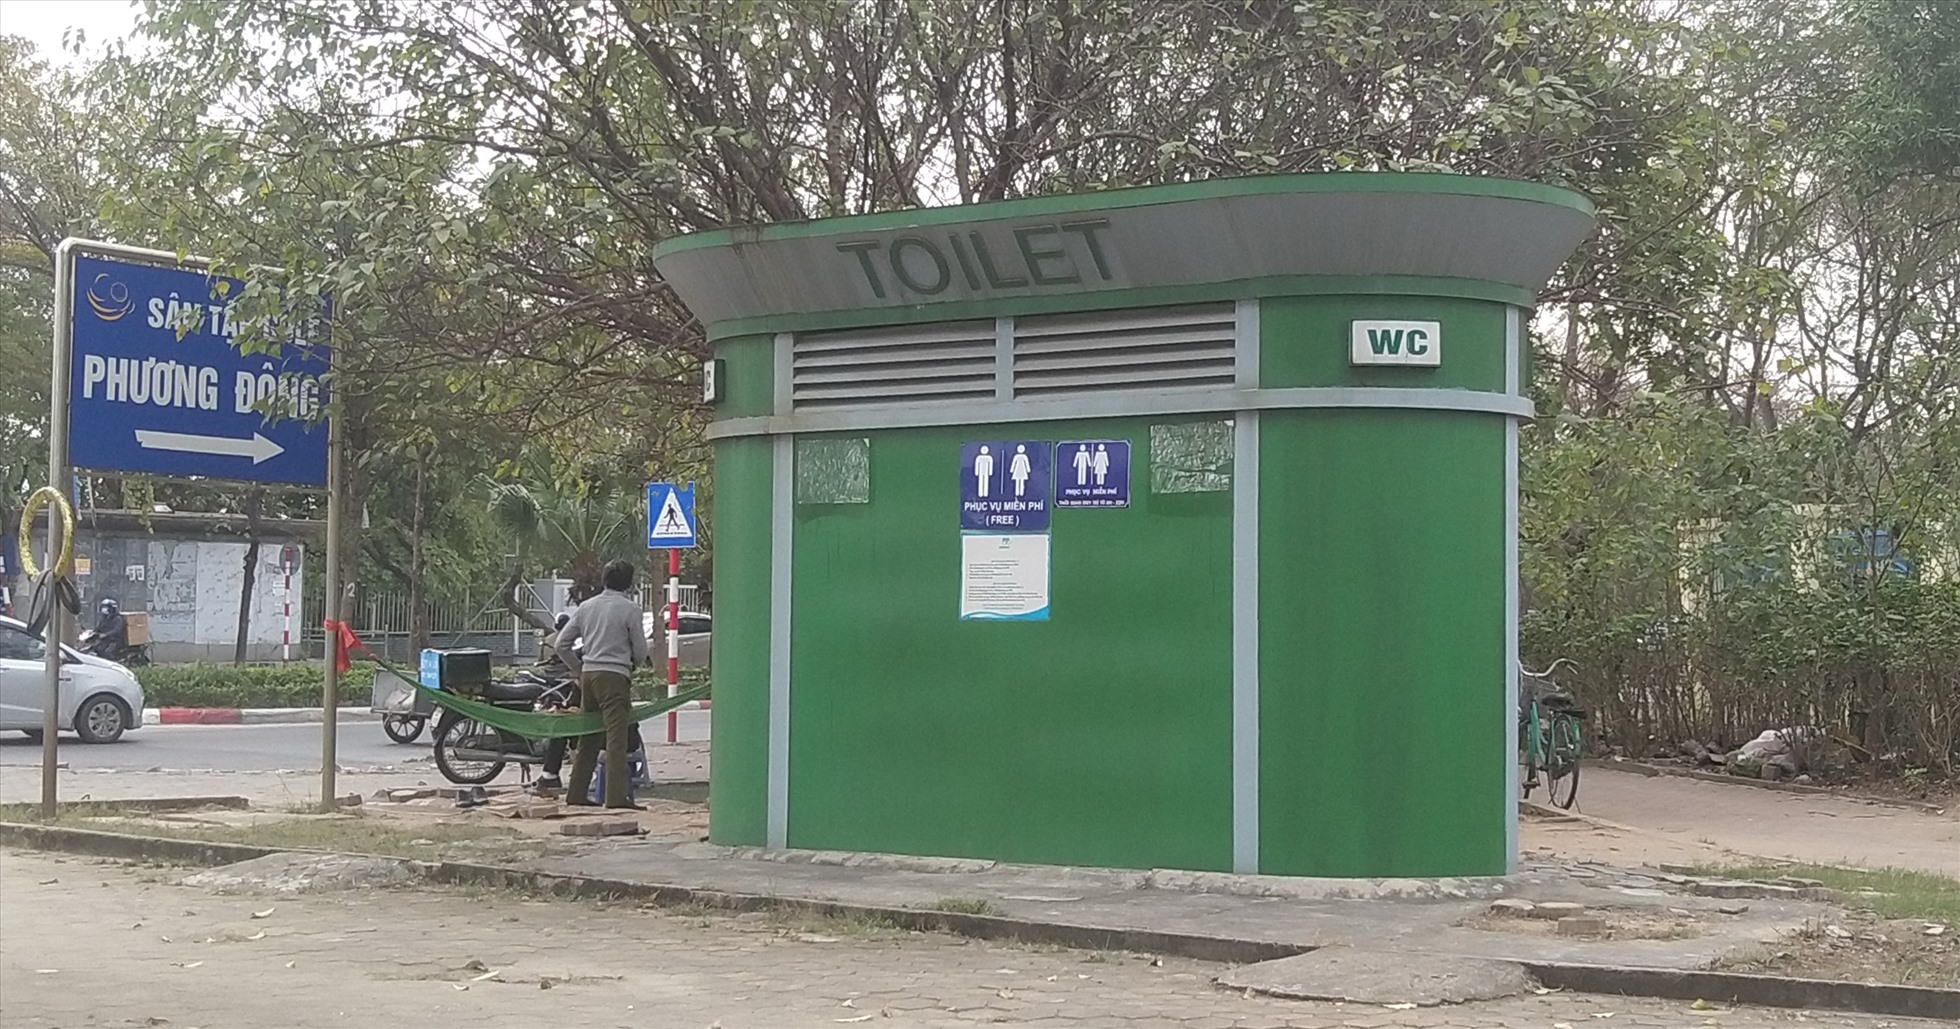 Theo Sở Xây dựng Hà Nội, hiện thành phố có khoảng 400 nhà vệ sinh công cộng, gồm trên 250 nhà bằng gạch xây trước năm 1990 tại các khu dân cư, số còn lại bằng thép tại đường phố, vườn hoa công cộng,…